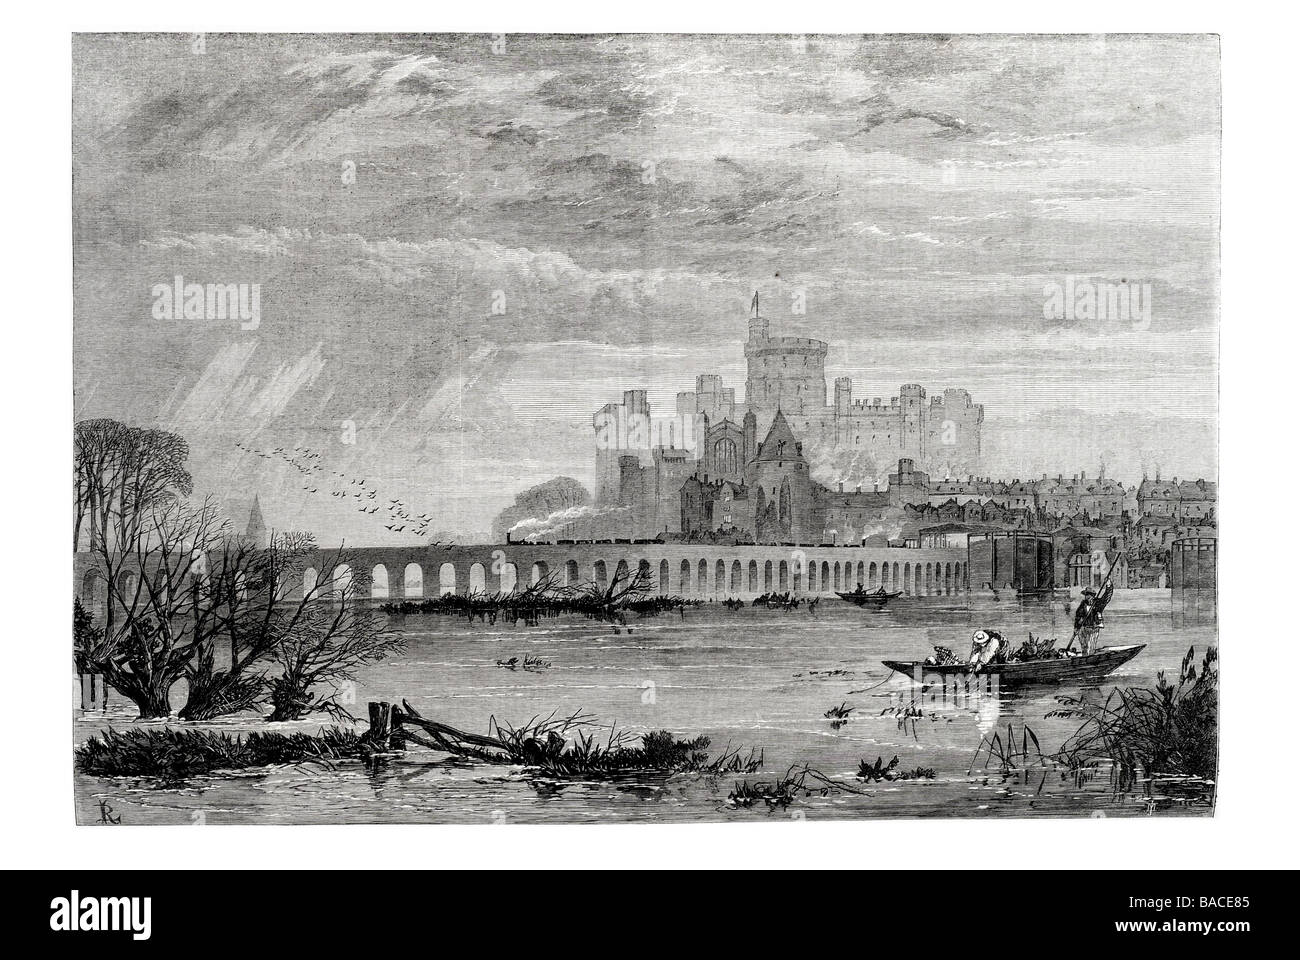 Le inondazioni al castello di Windsor vista dalla strada clewer 1867 river management condizioni meteorologiche estreme flood Foto Stock